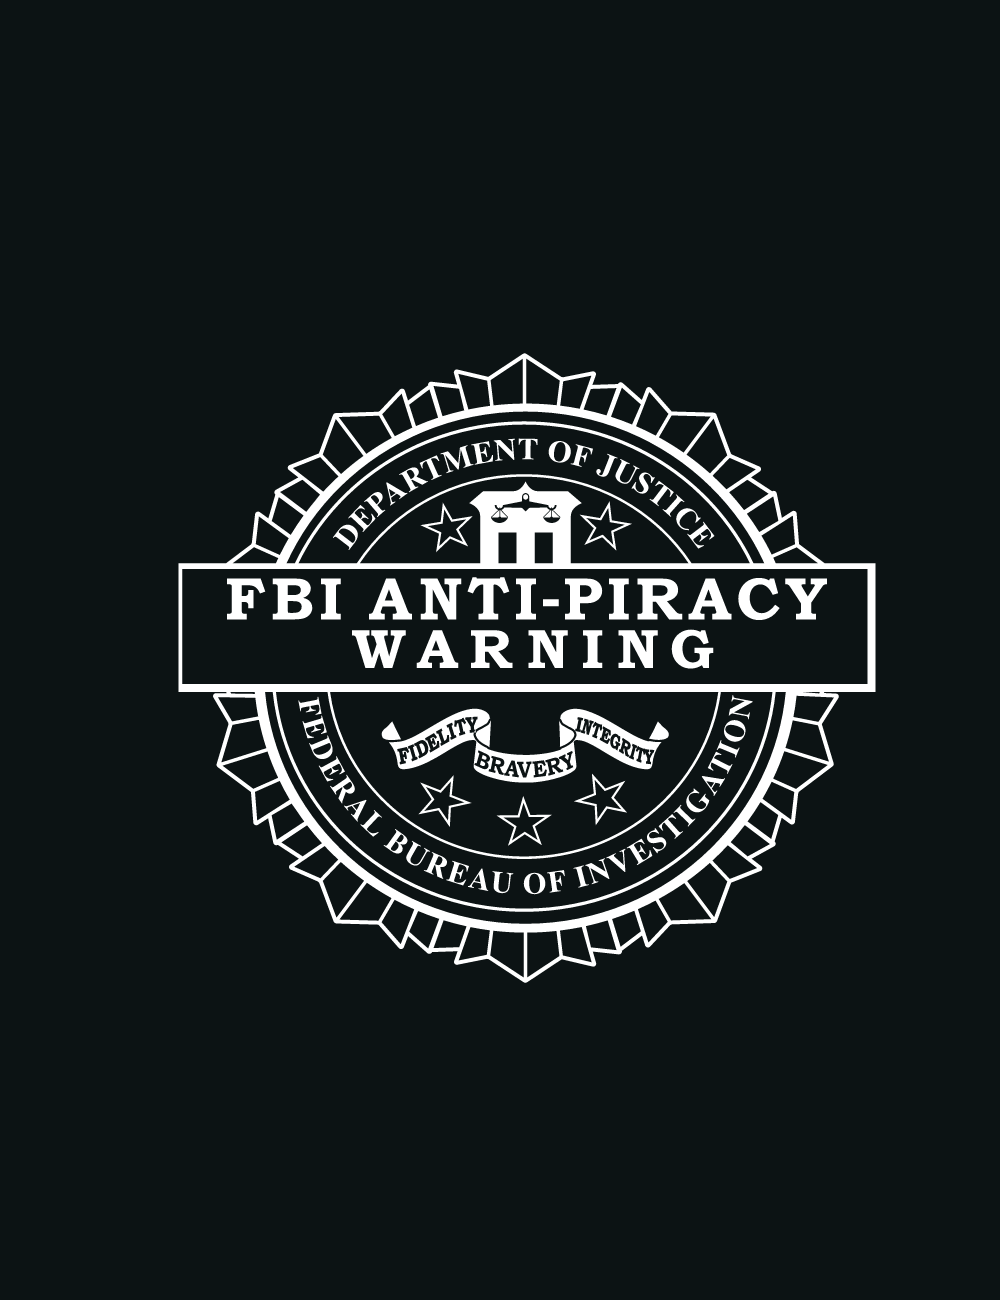 FBI ANTI-PIRACY Logo Logos